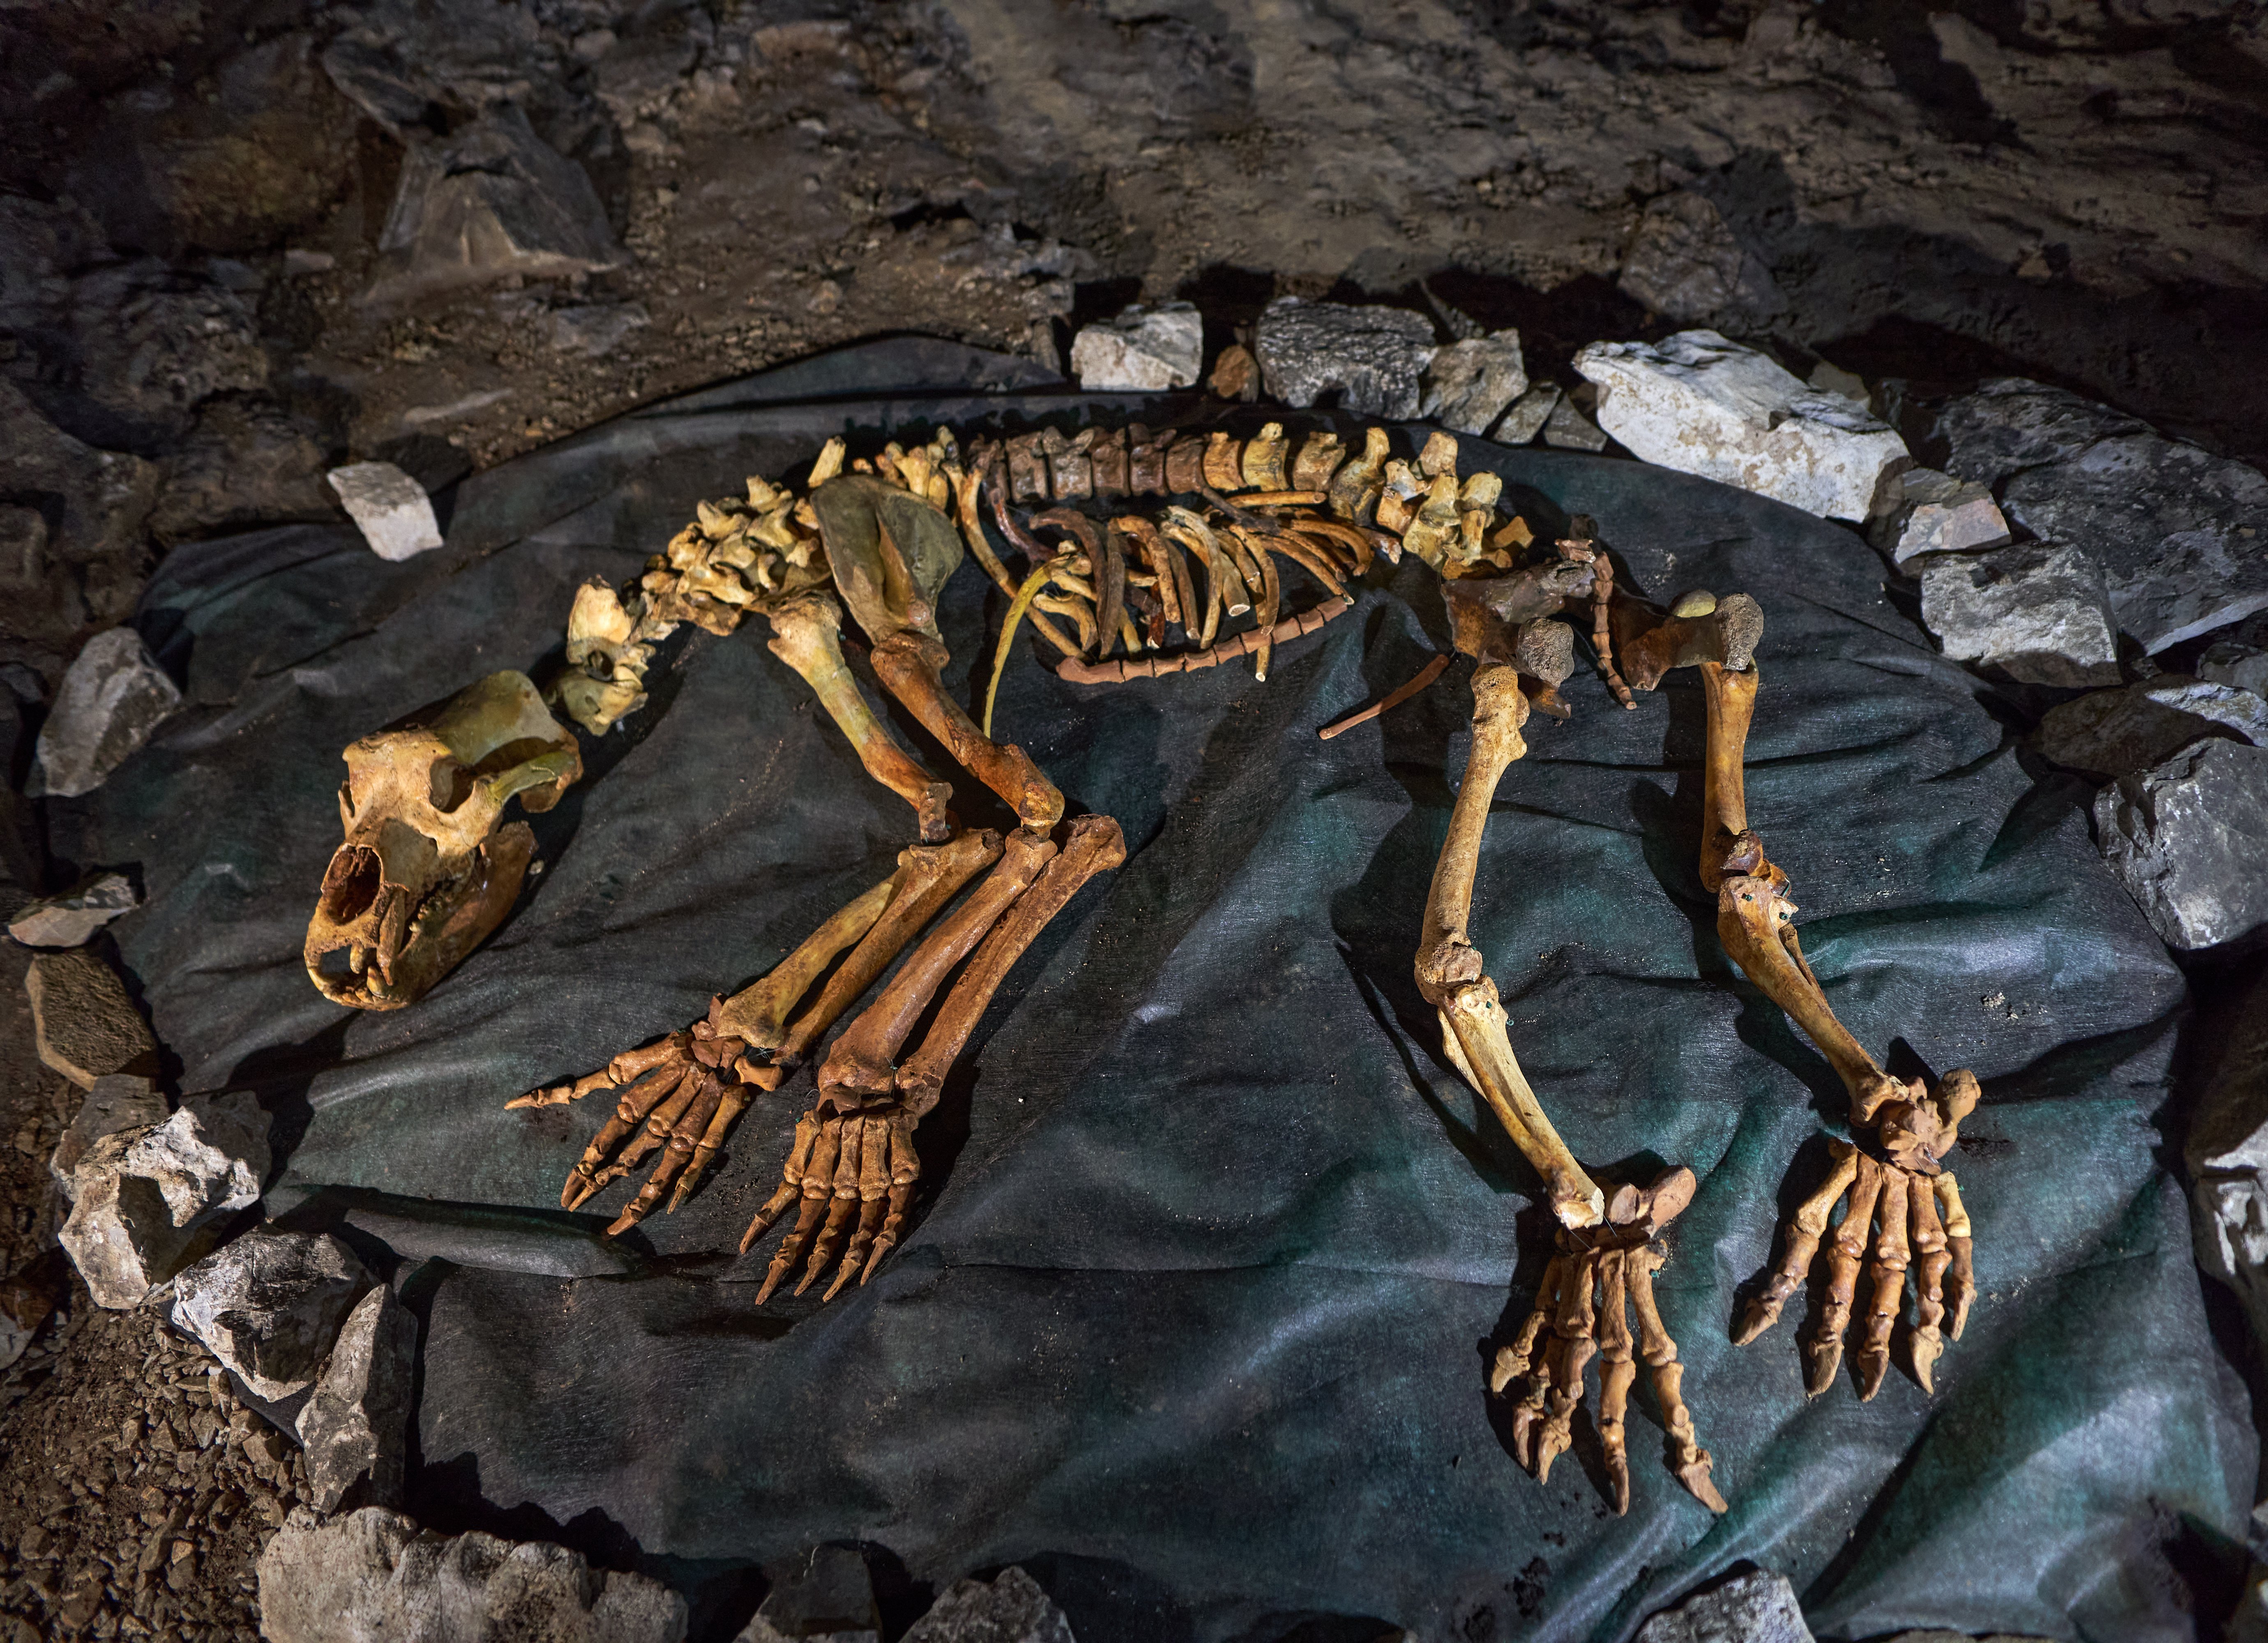 Knochen eines Höhlenbären, die so angeordnet sind, dass sie ein vollständiges Skelett bilden.